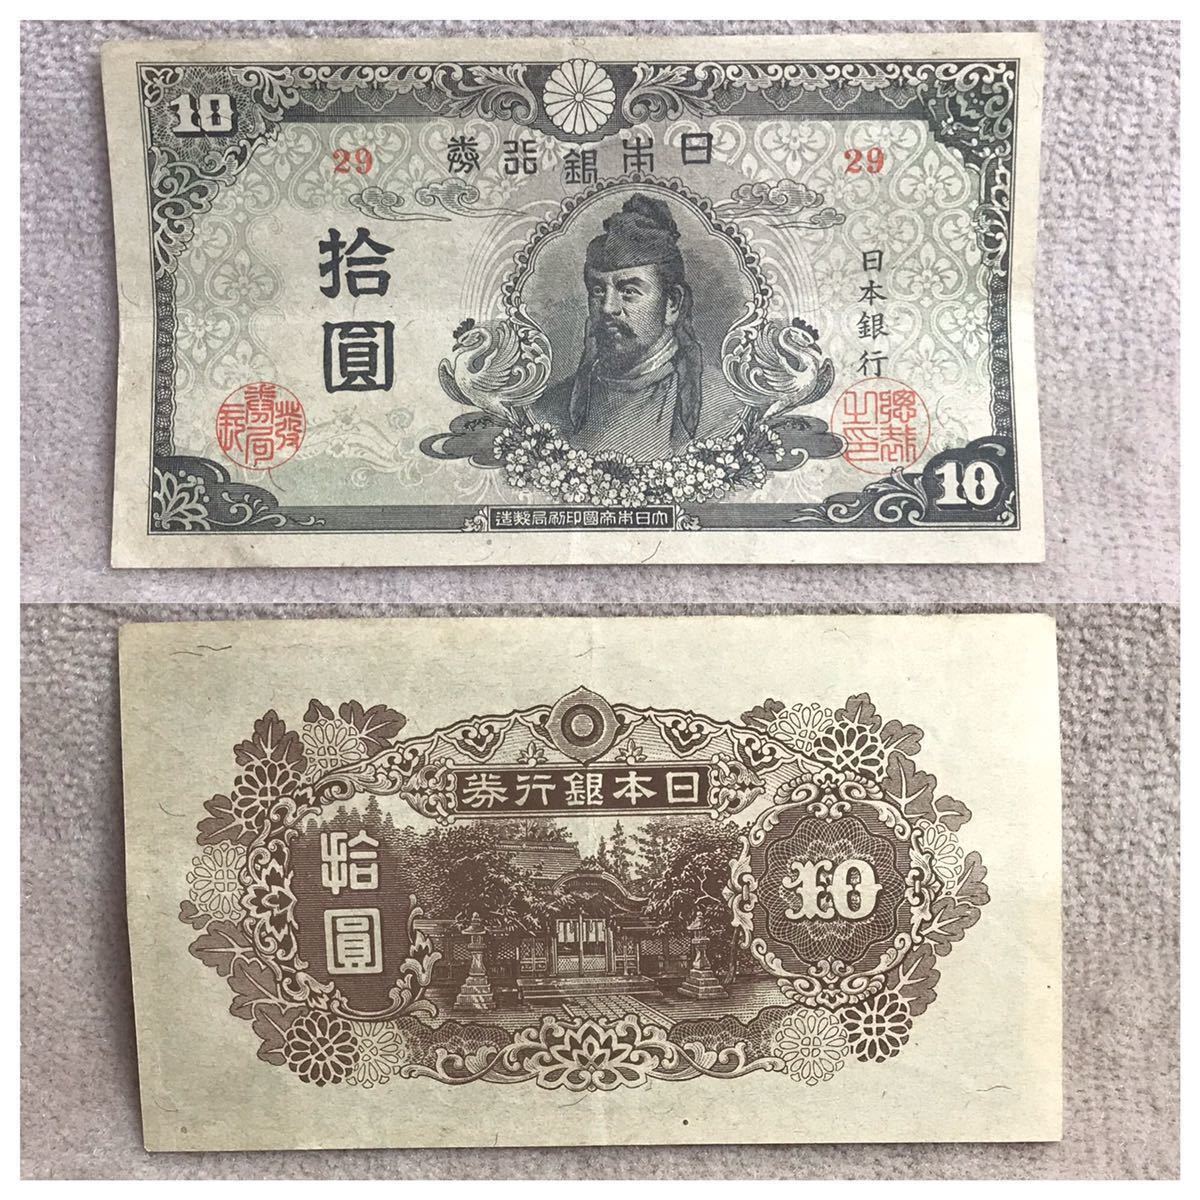 再改正不換紙幣10円 (4次10円) 中央に和気清麿 記号29 前期 美品《#452YKSHF》_画像10